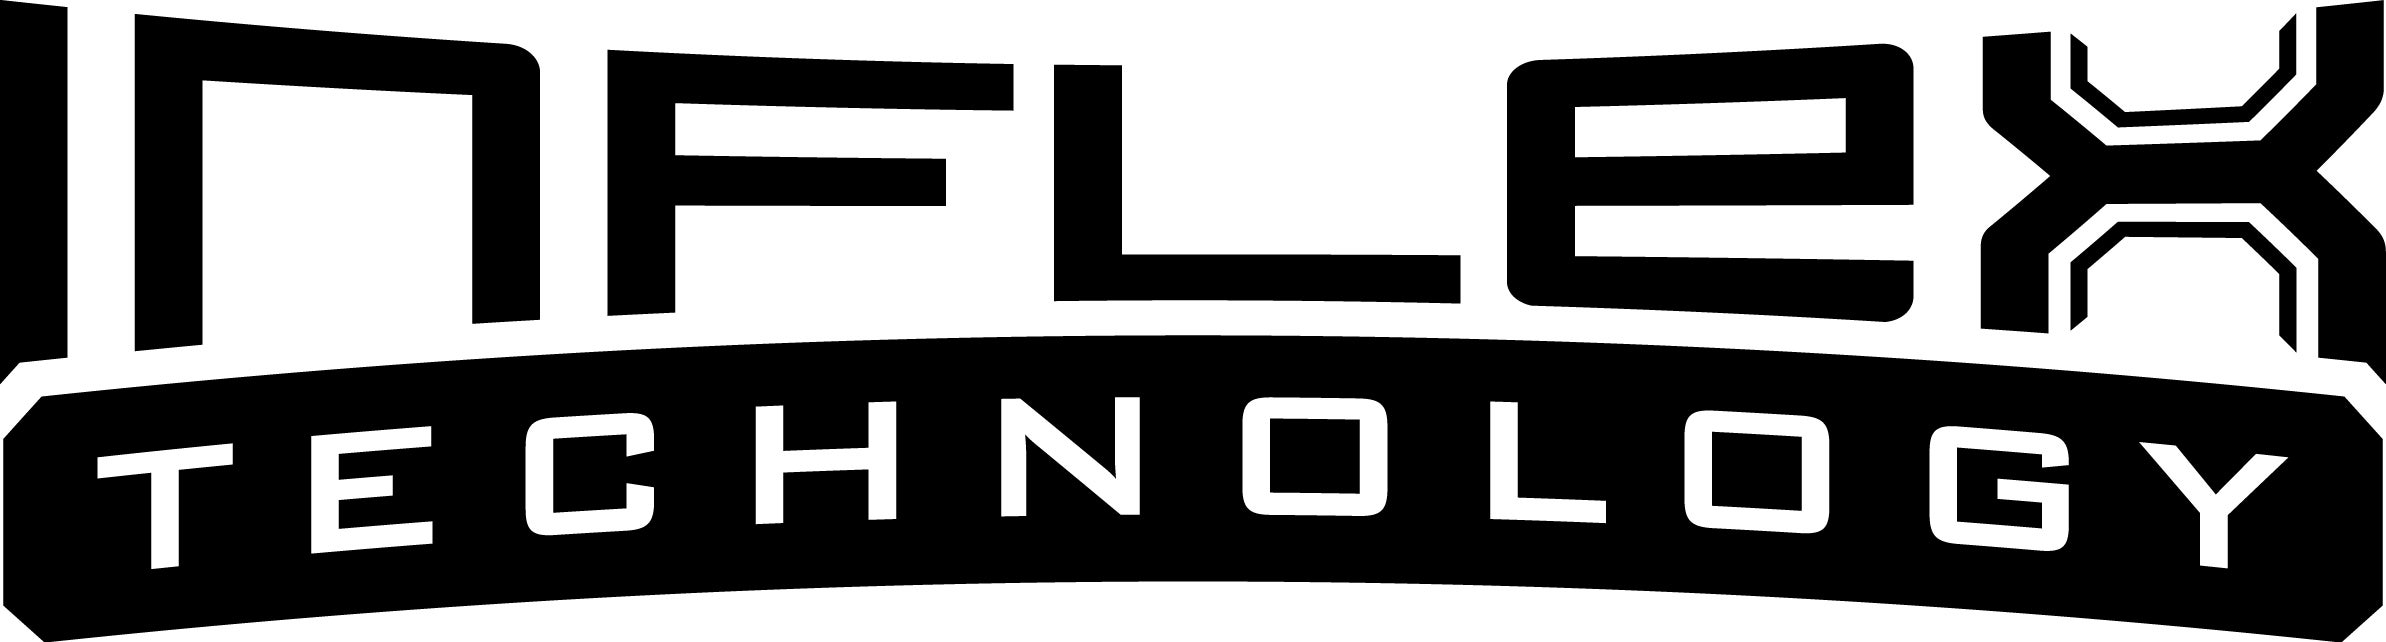 Inflex Technology Logo